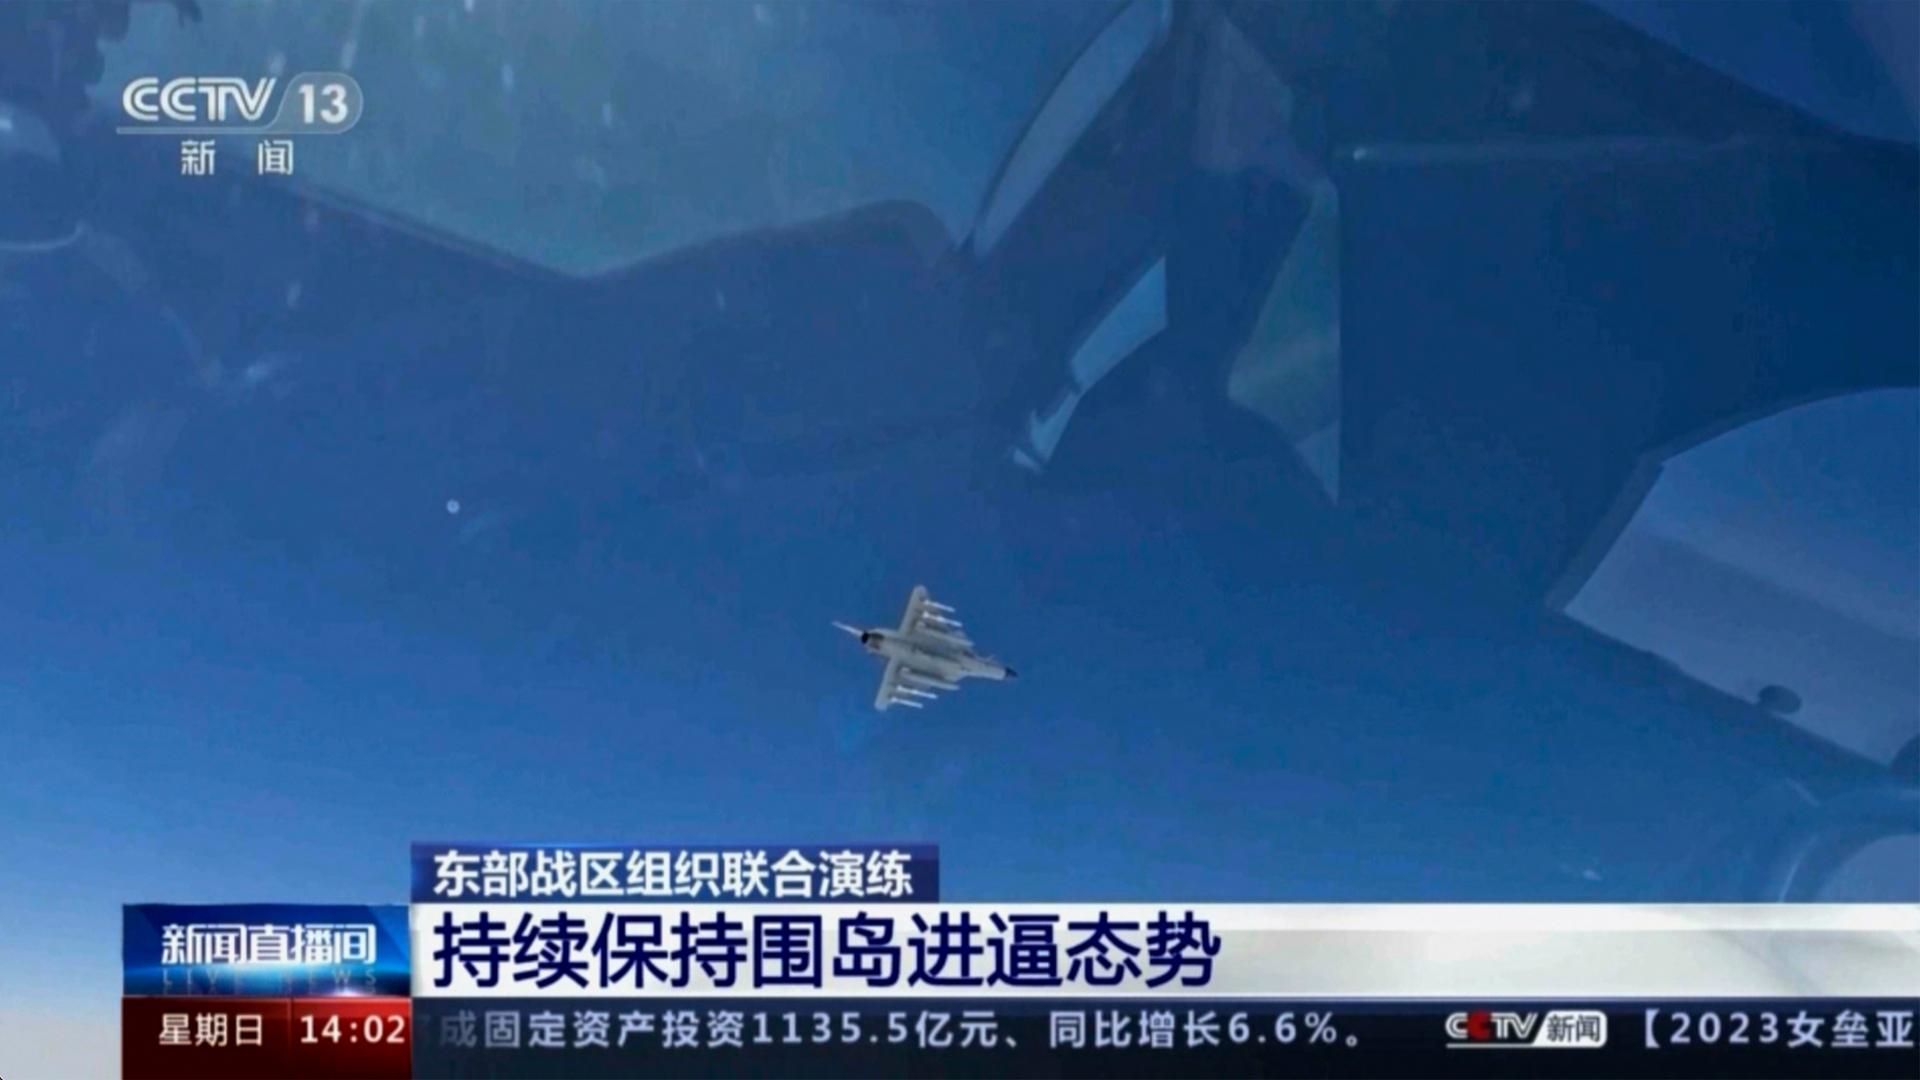 Dieses Videostandbild von Chinas Fernsehsender CCTV zeigt ein Kampfjet während einer Militärübung an einem nicht näher genannten Ort.